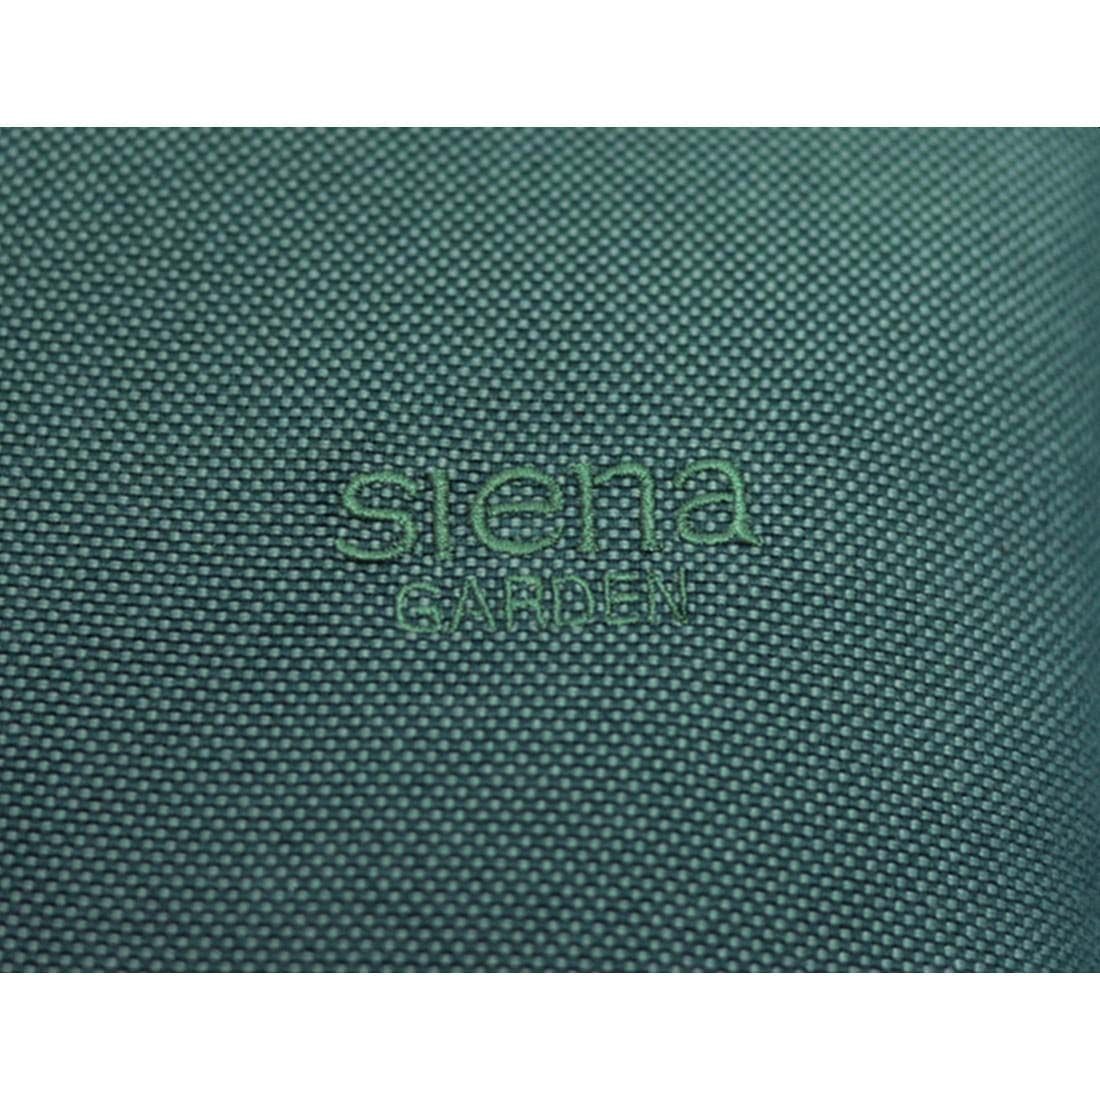 Siena Garden Musica Standardauflage 110x48x3cm Olefin